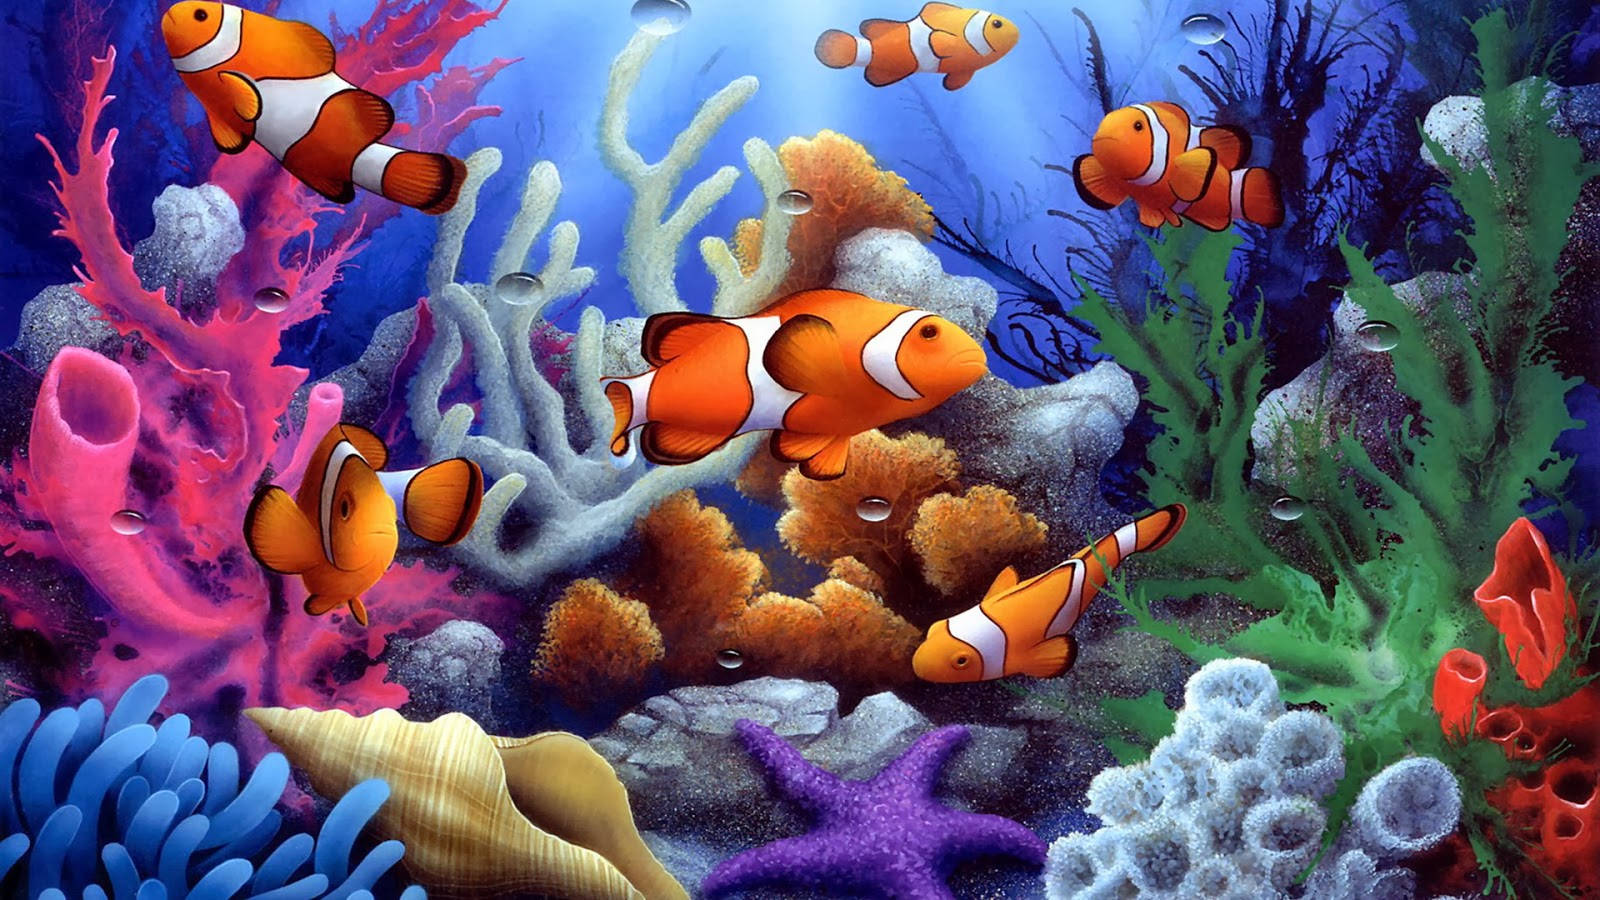 HD Fishes Orange Clownfish Digital Art Wallpaper